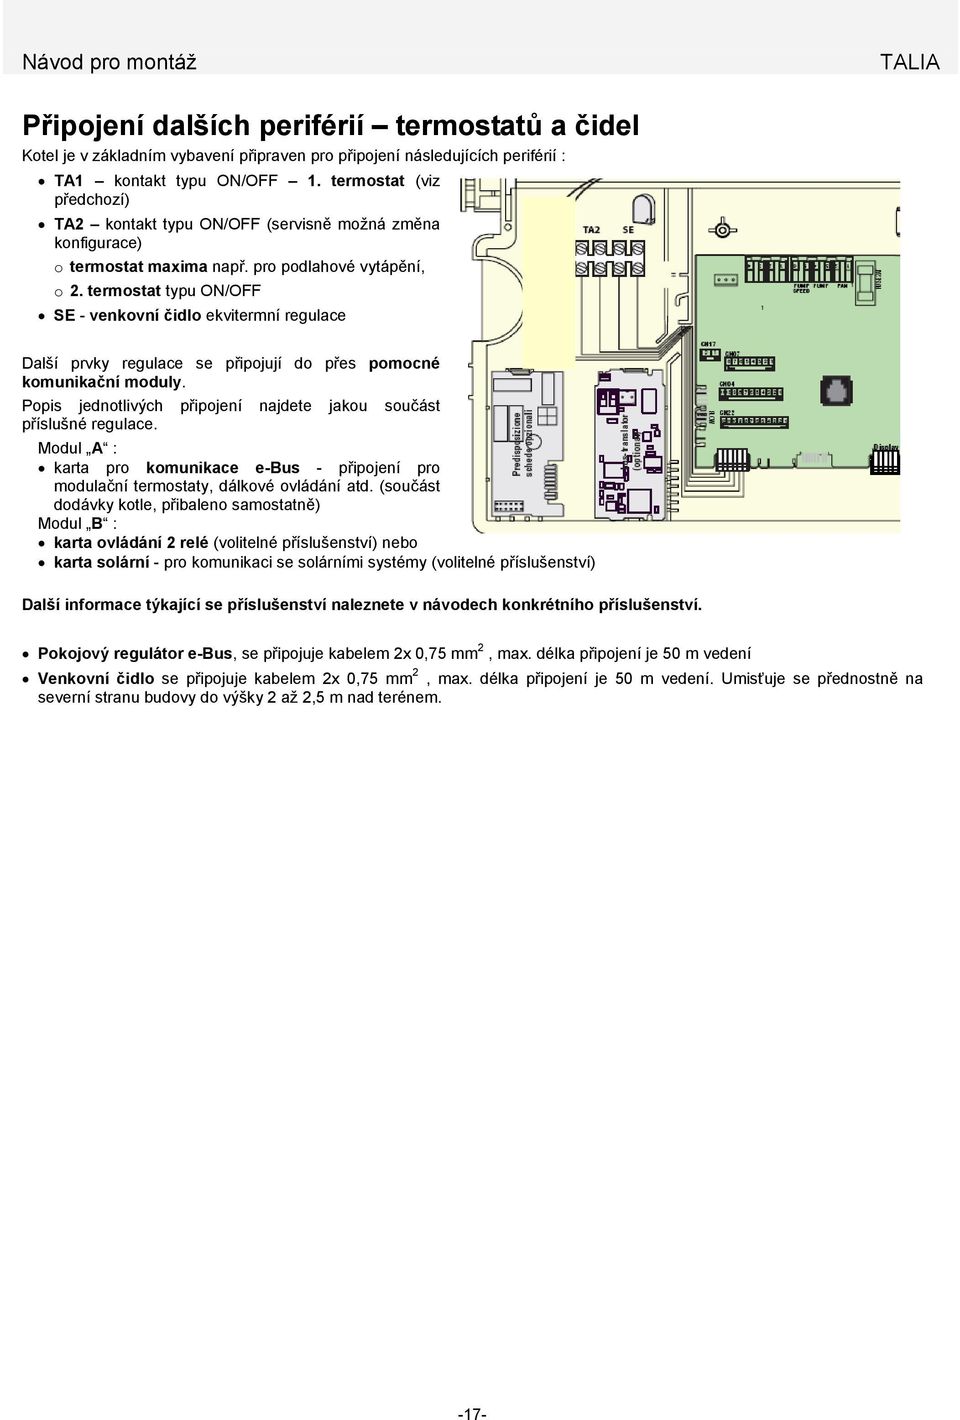 termostat typu ON/OFF SE - venkovní čidlo ekvitermní regulace Další prvky regulace se připojují do přes pomocné komunikační moduly.